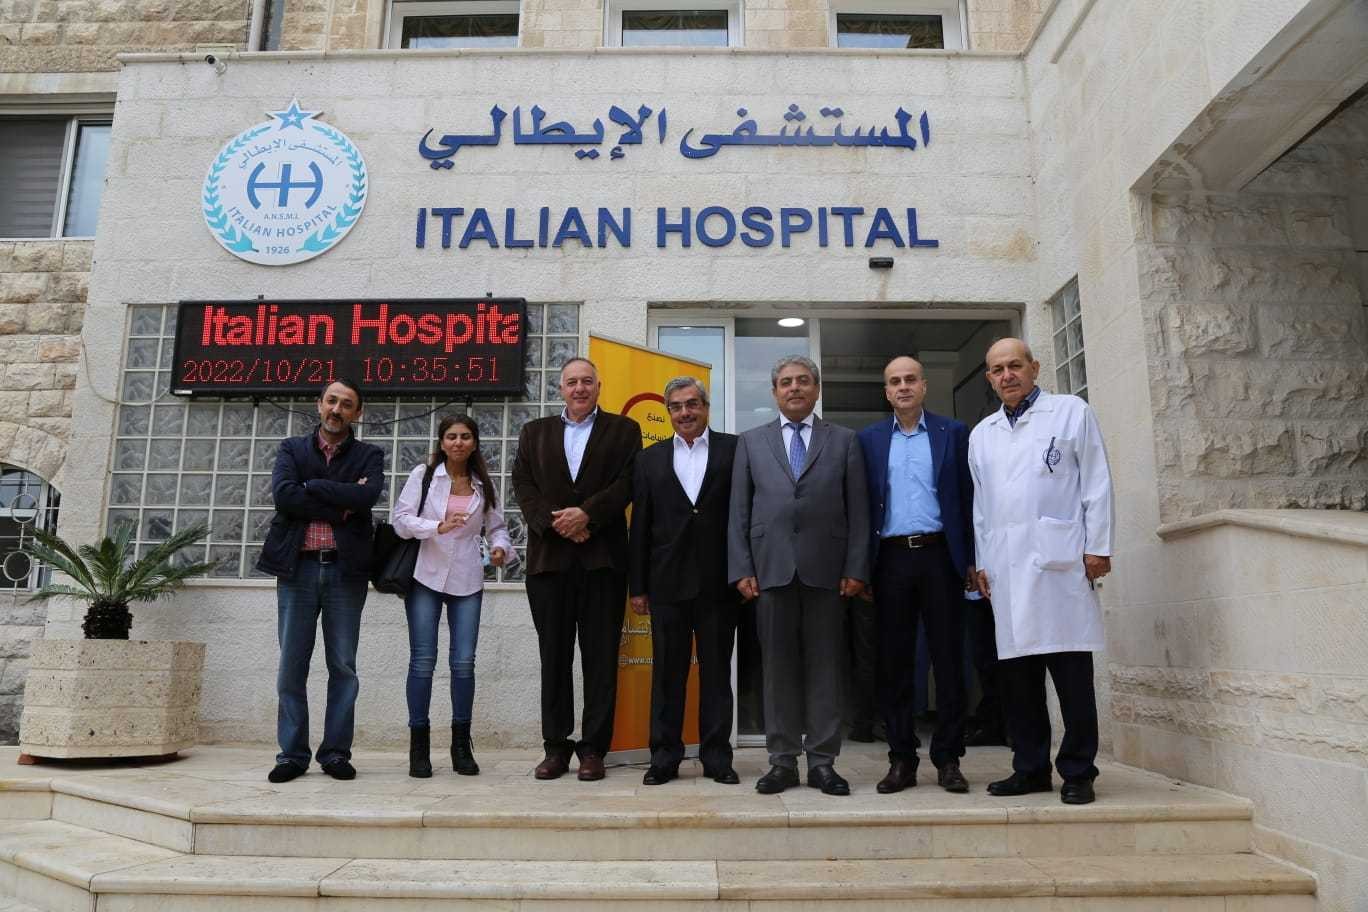 جمعية الابتسامة تطلق حملتها الطبية المجانية بالمستشفى الإيطالي